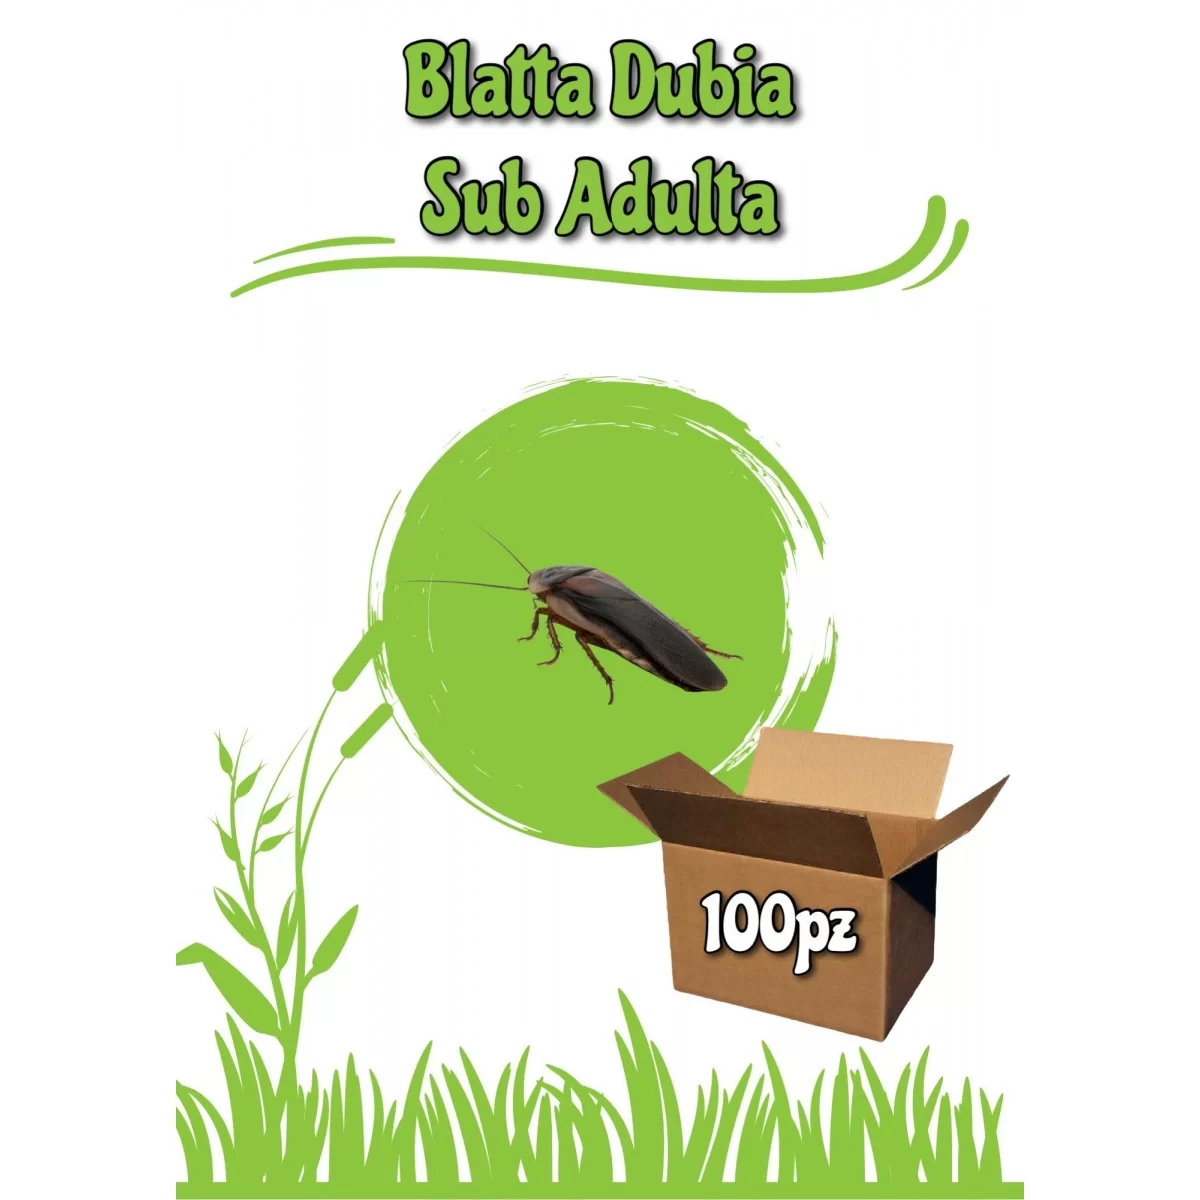 Blatta Dubia Sub Adulta 100pz